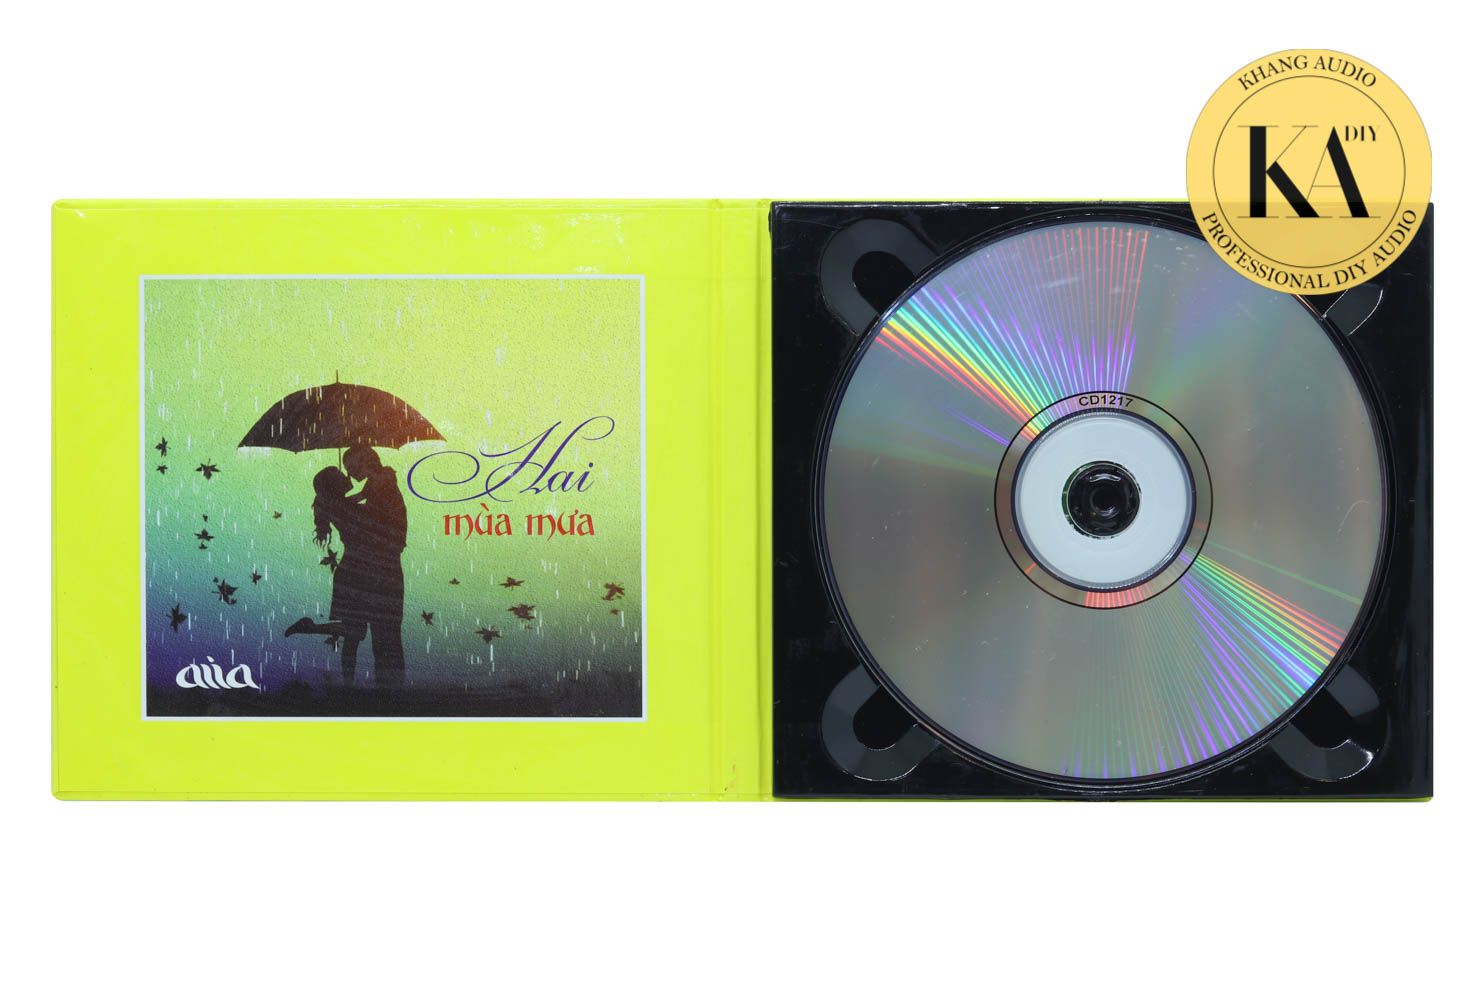 Hai Mùa Mưa - ASIA GOLD - CD Thử Dàn Âm Thanh Khang Audio 0336380099